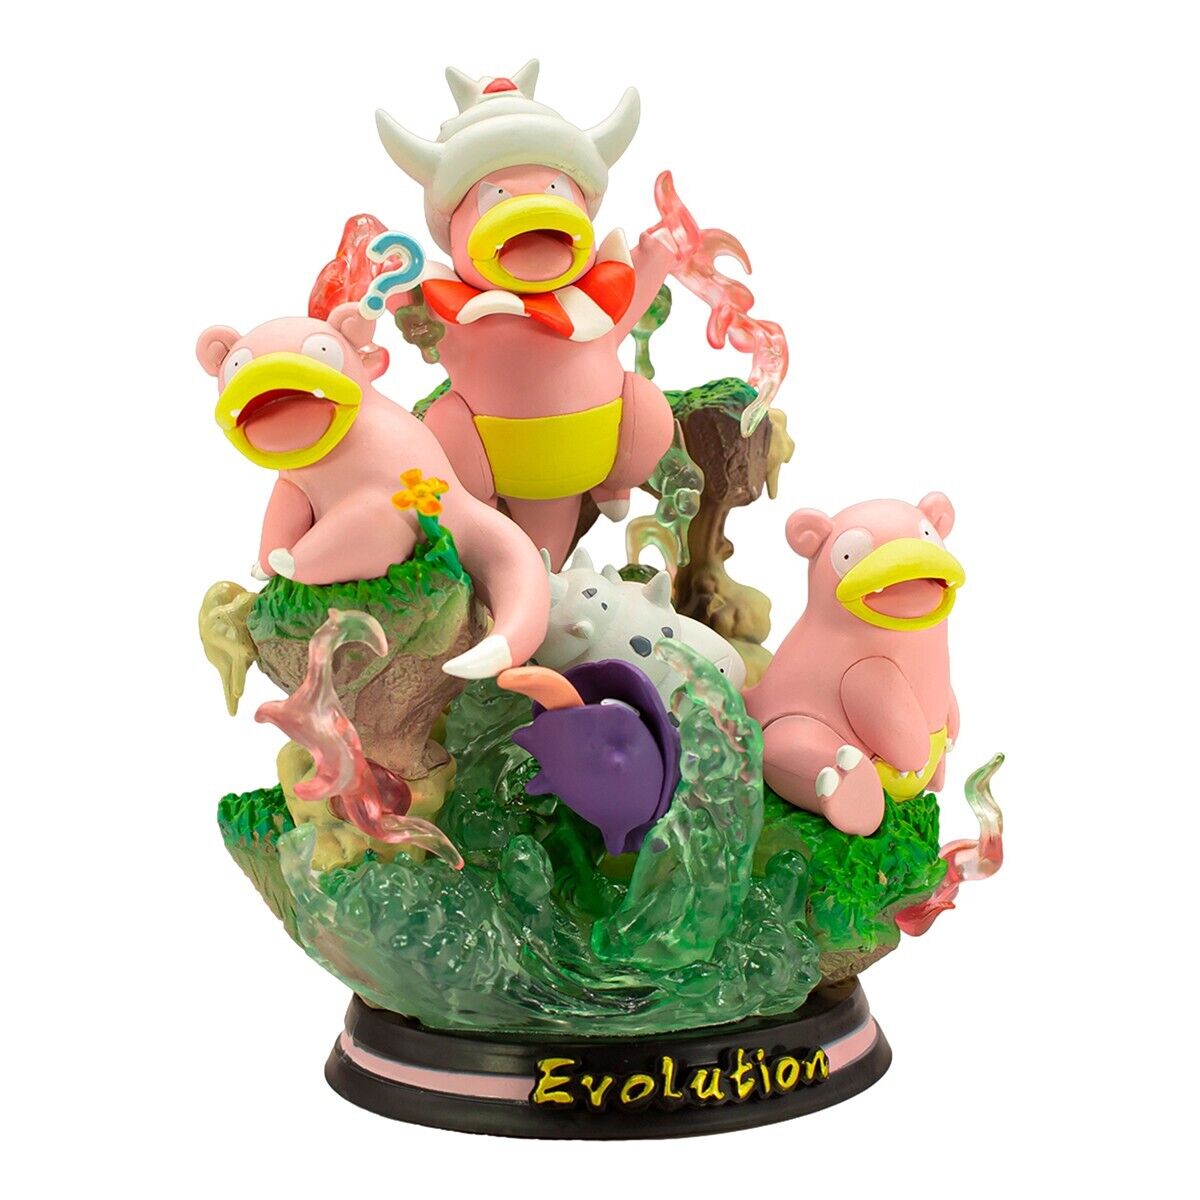 Slowpoke Slowking Family Evolution Pokemon Statue Figure Evolving LED Light